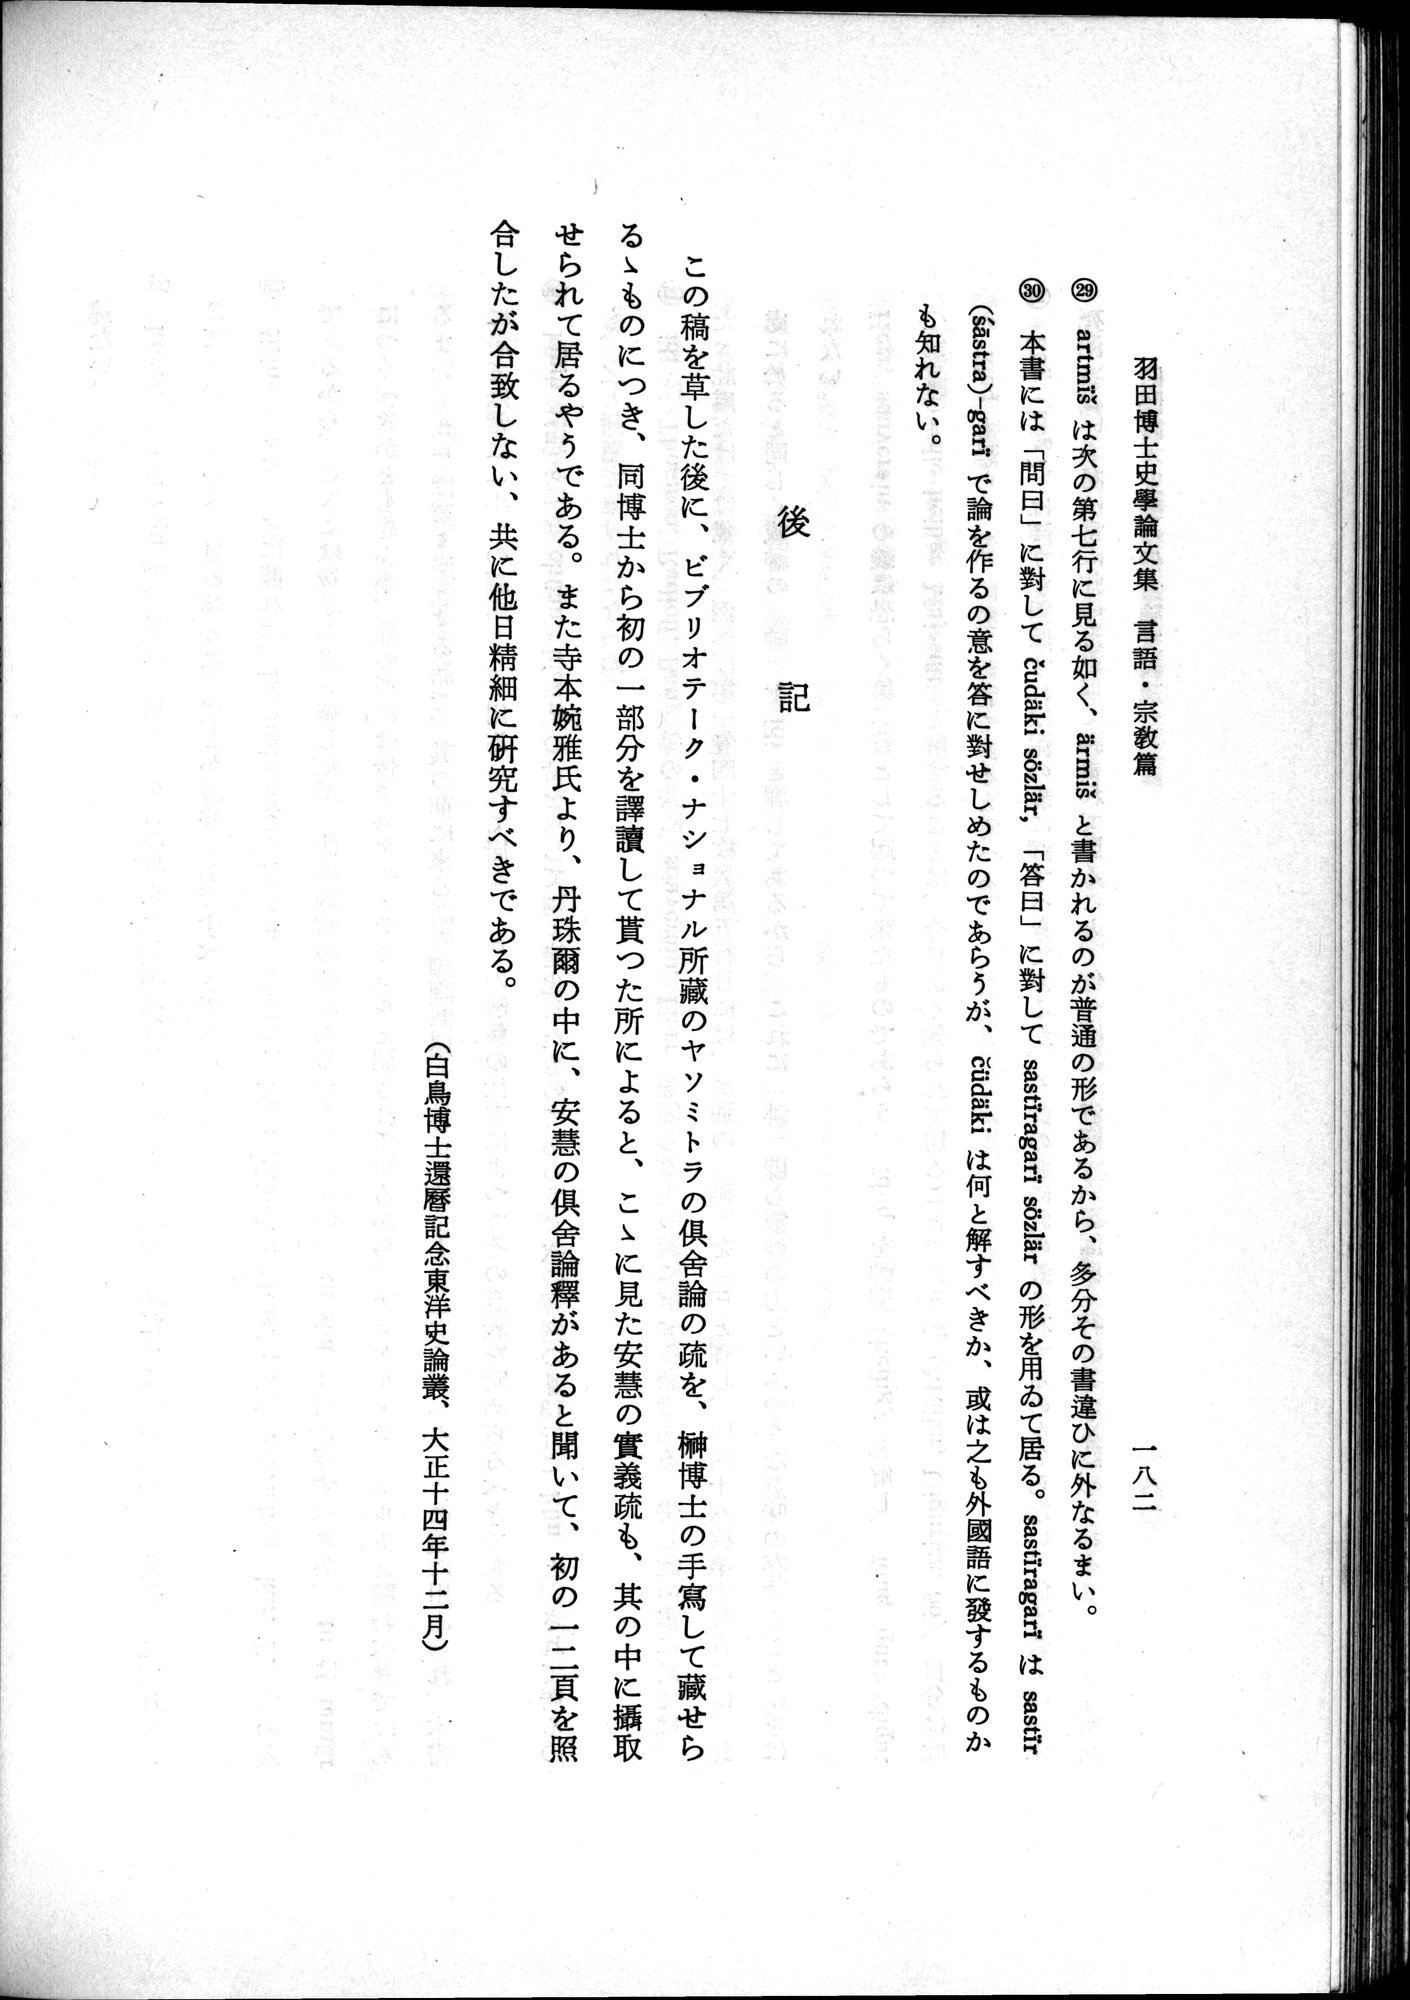 羽田博士史学論文集 : vol.2 / Page 244 (Grayscale High Resolution Image)